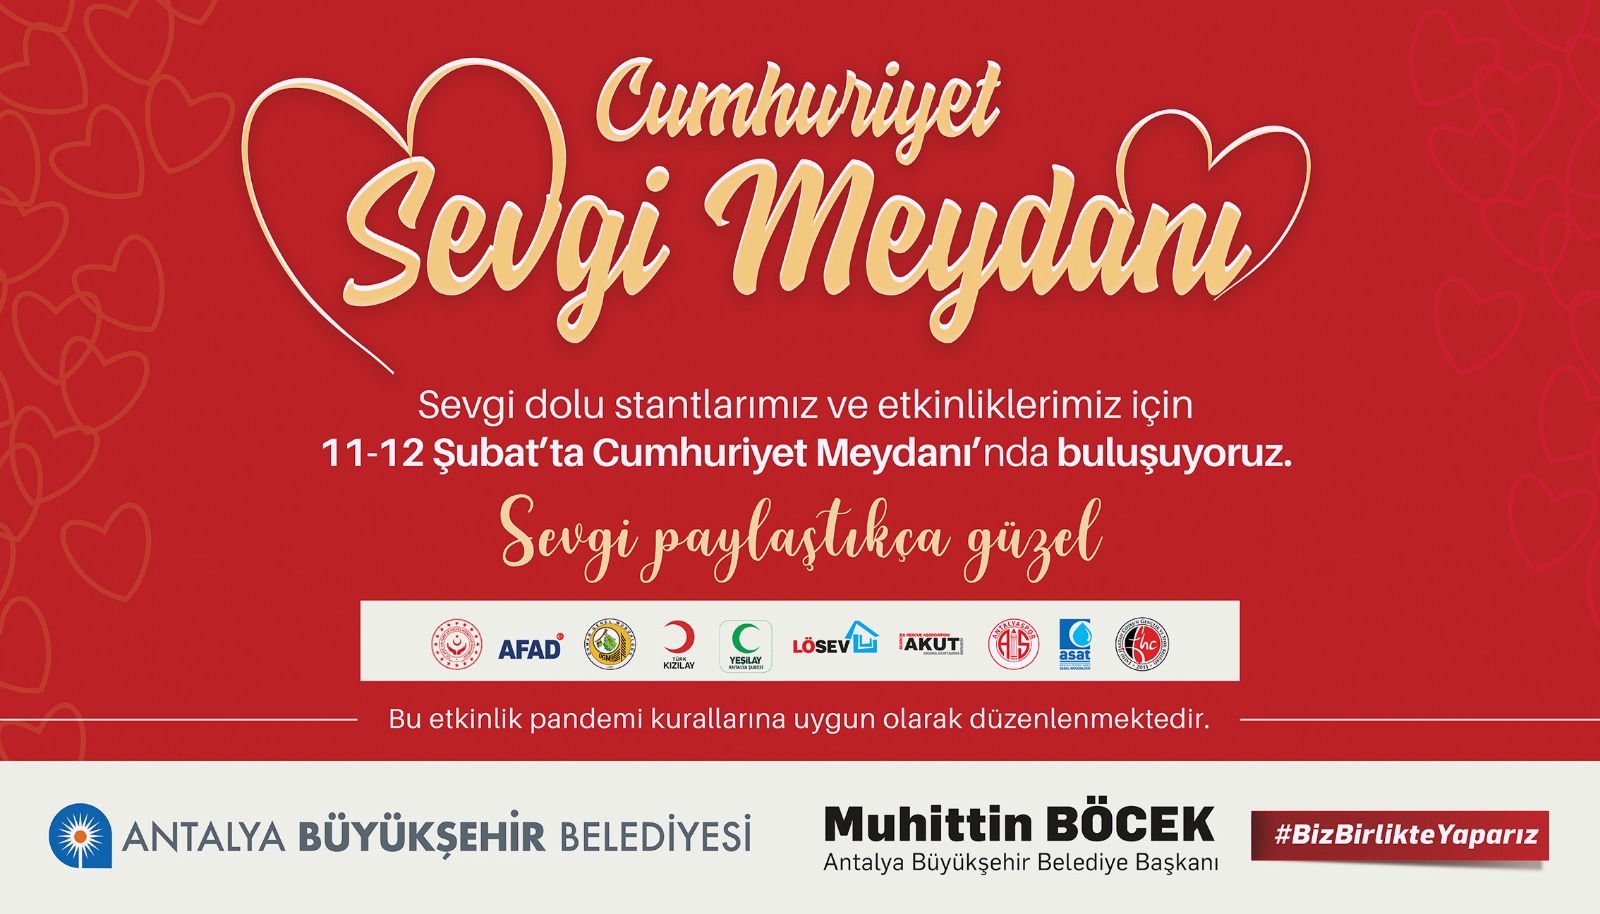  Büyükşehir 14 Şubat'ı daha anlamlı kılacak Cumhuriyet Sevgi Meydanı etkinliği düzenlenecek  